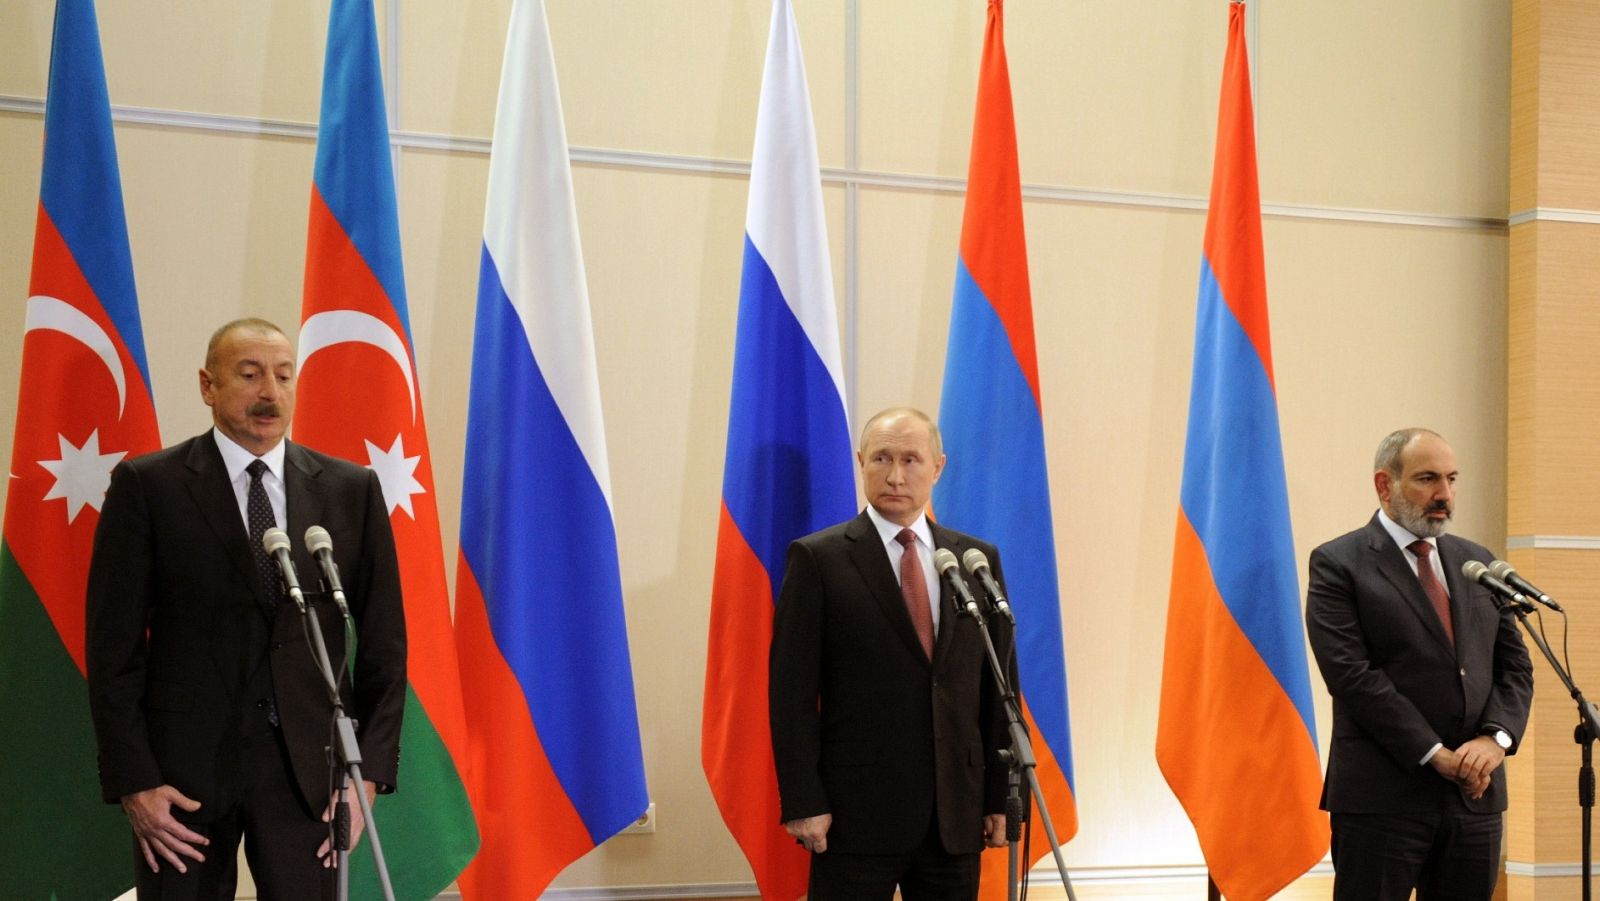 Ilham Aliyev, Vladimir Putin y Nikol Pashinyan posan delante de las banderas